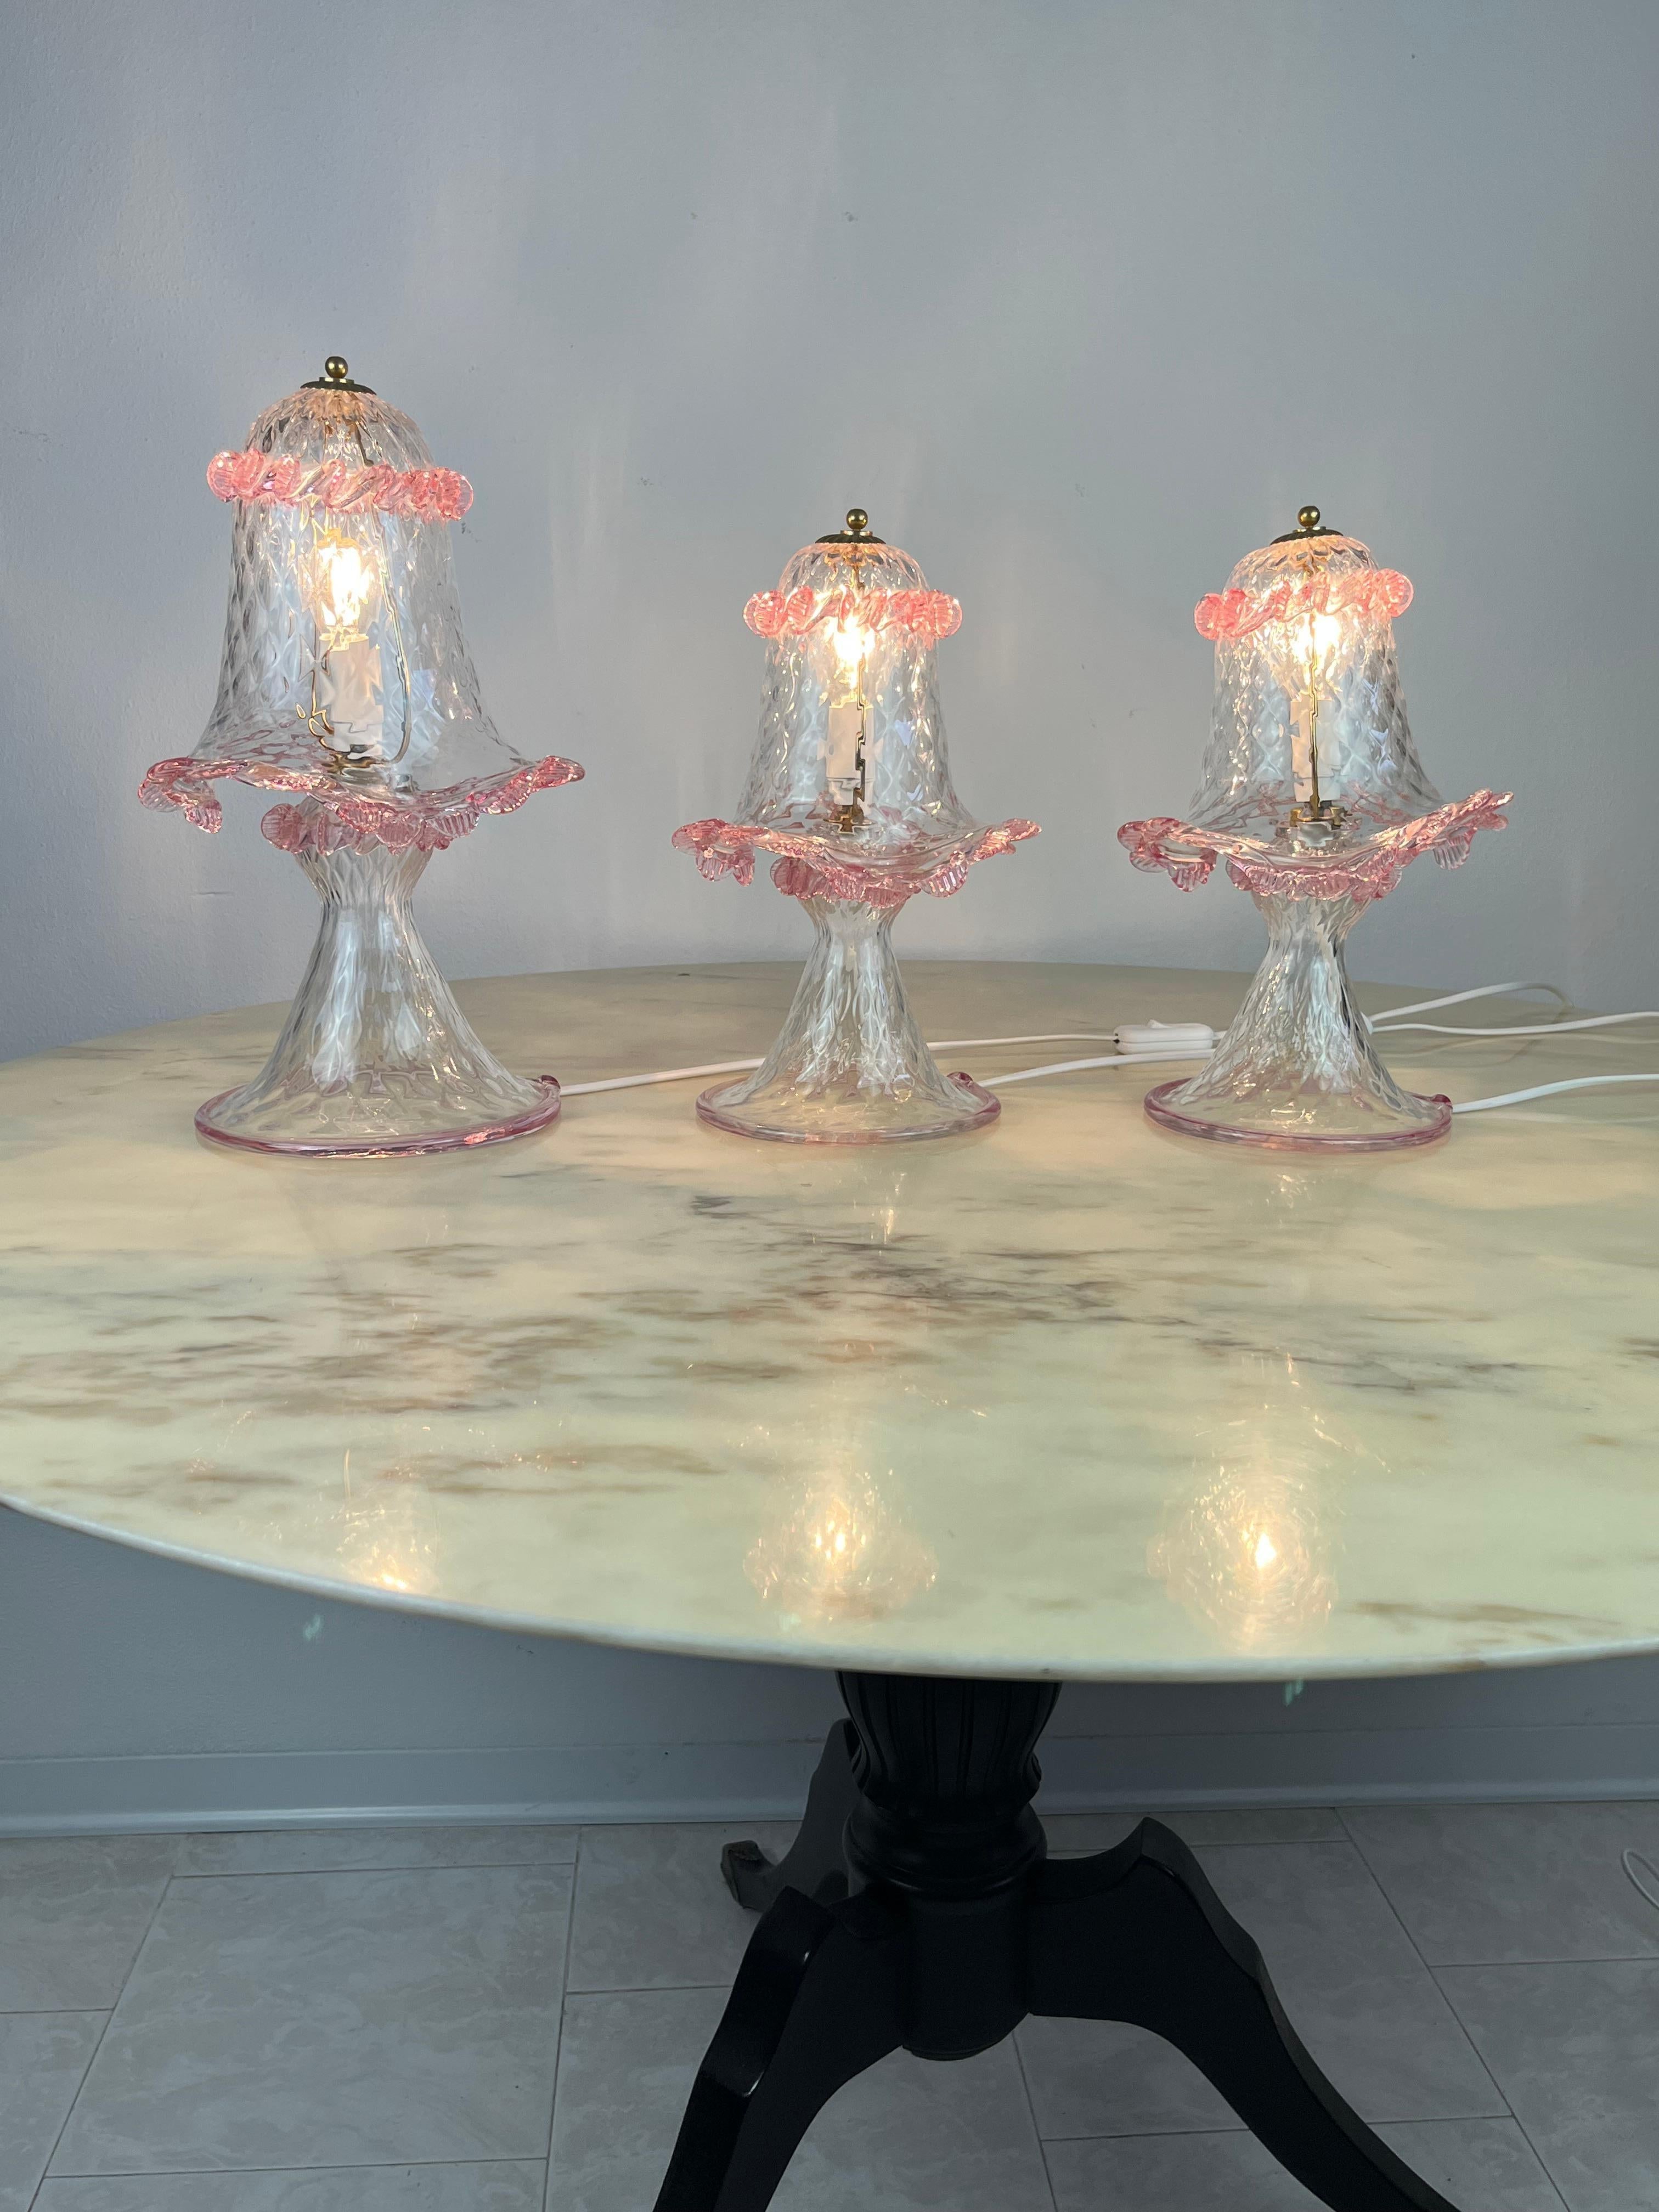 Ensemble de trois lampes Murano, Italie, années 1980.
Idéal pour la chambre à coucher.
Le grand modèle mesure 38 cm et a un diamètre de 22 cm. Les deux plus petites, destinées aux tables de chevet, mesurent 30 cm et ont un diamètre de 16.
Intacts et